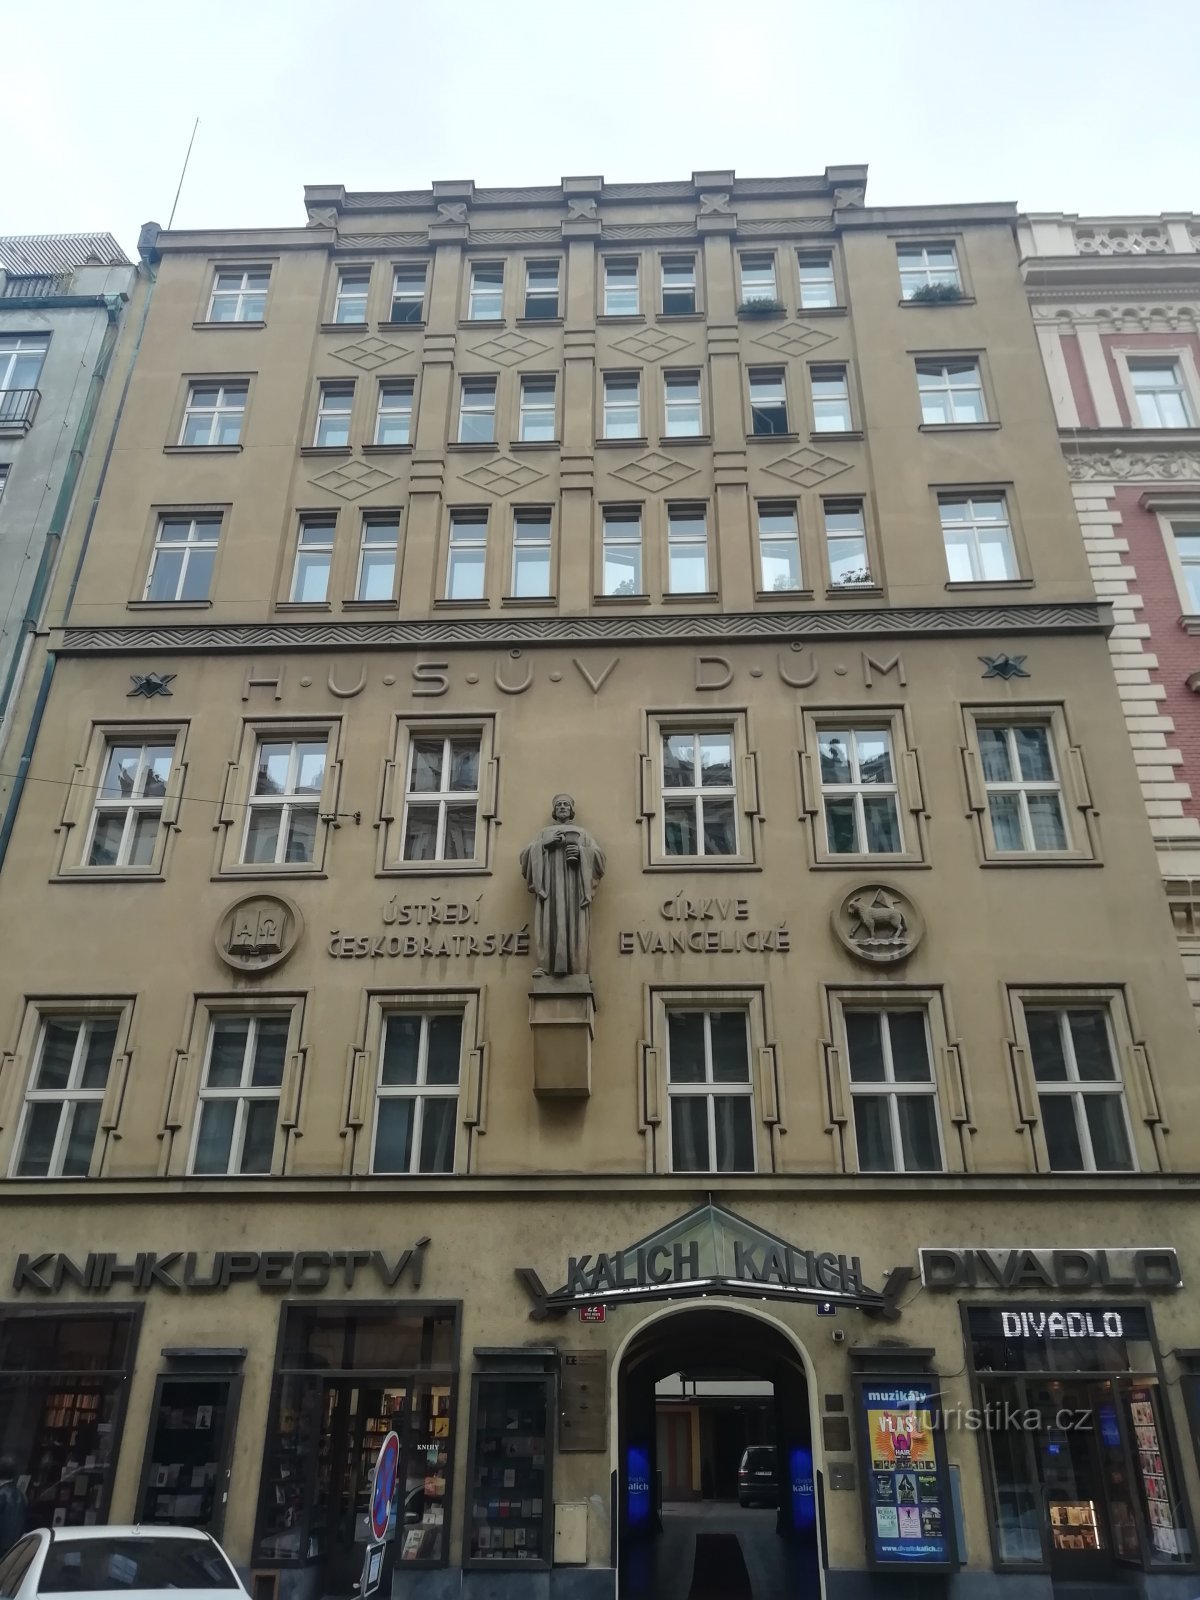 en taklist ovanför Husův Dům-inskriptionen skiljer de nytillkomna våningarna från de ursprungliga